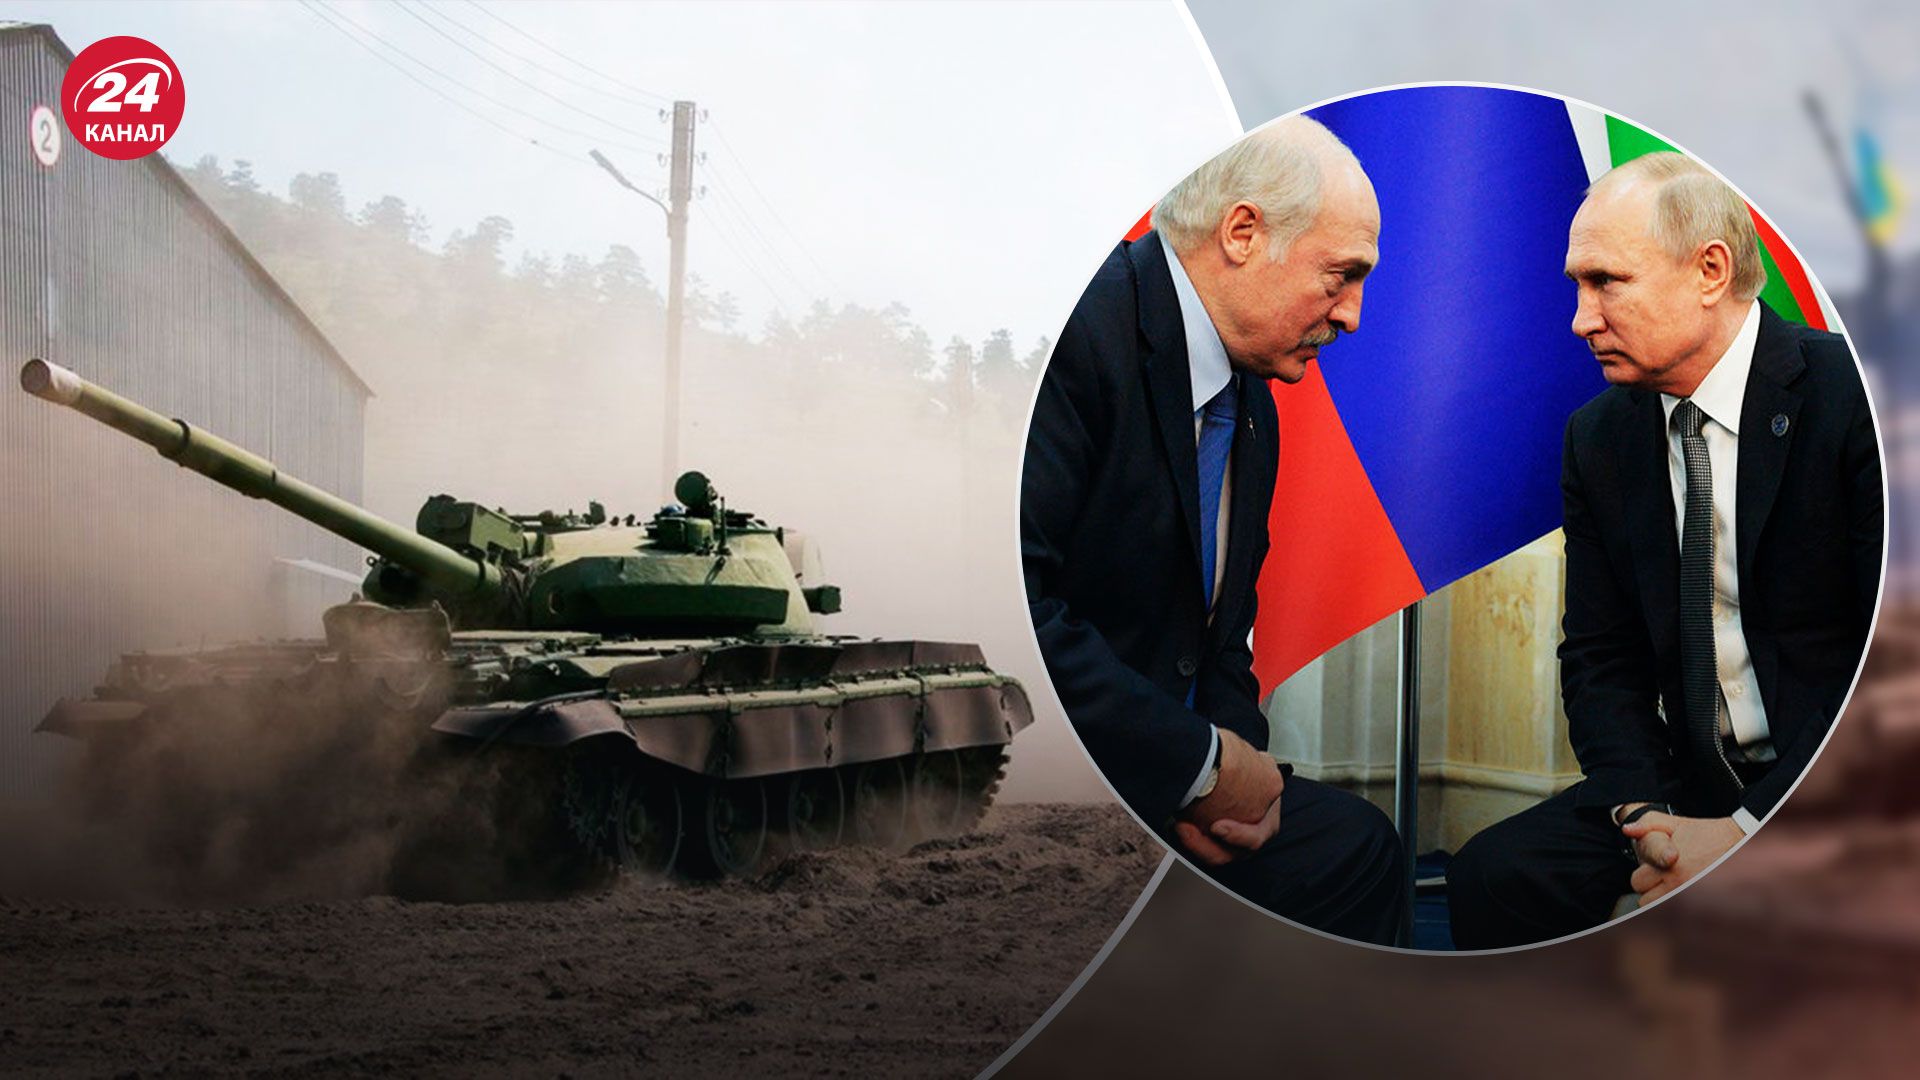 Беларусь передала России военную технику - Мотолько сказал, сколько - 24 Канал